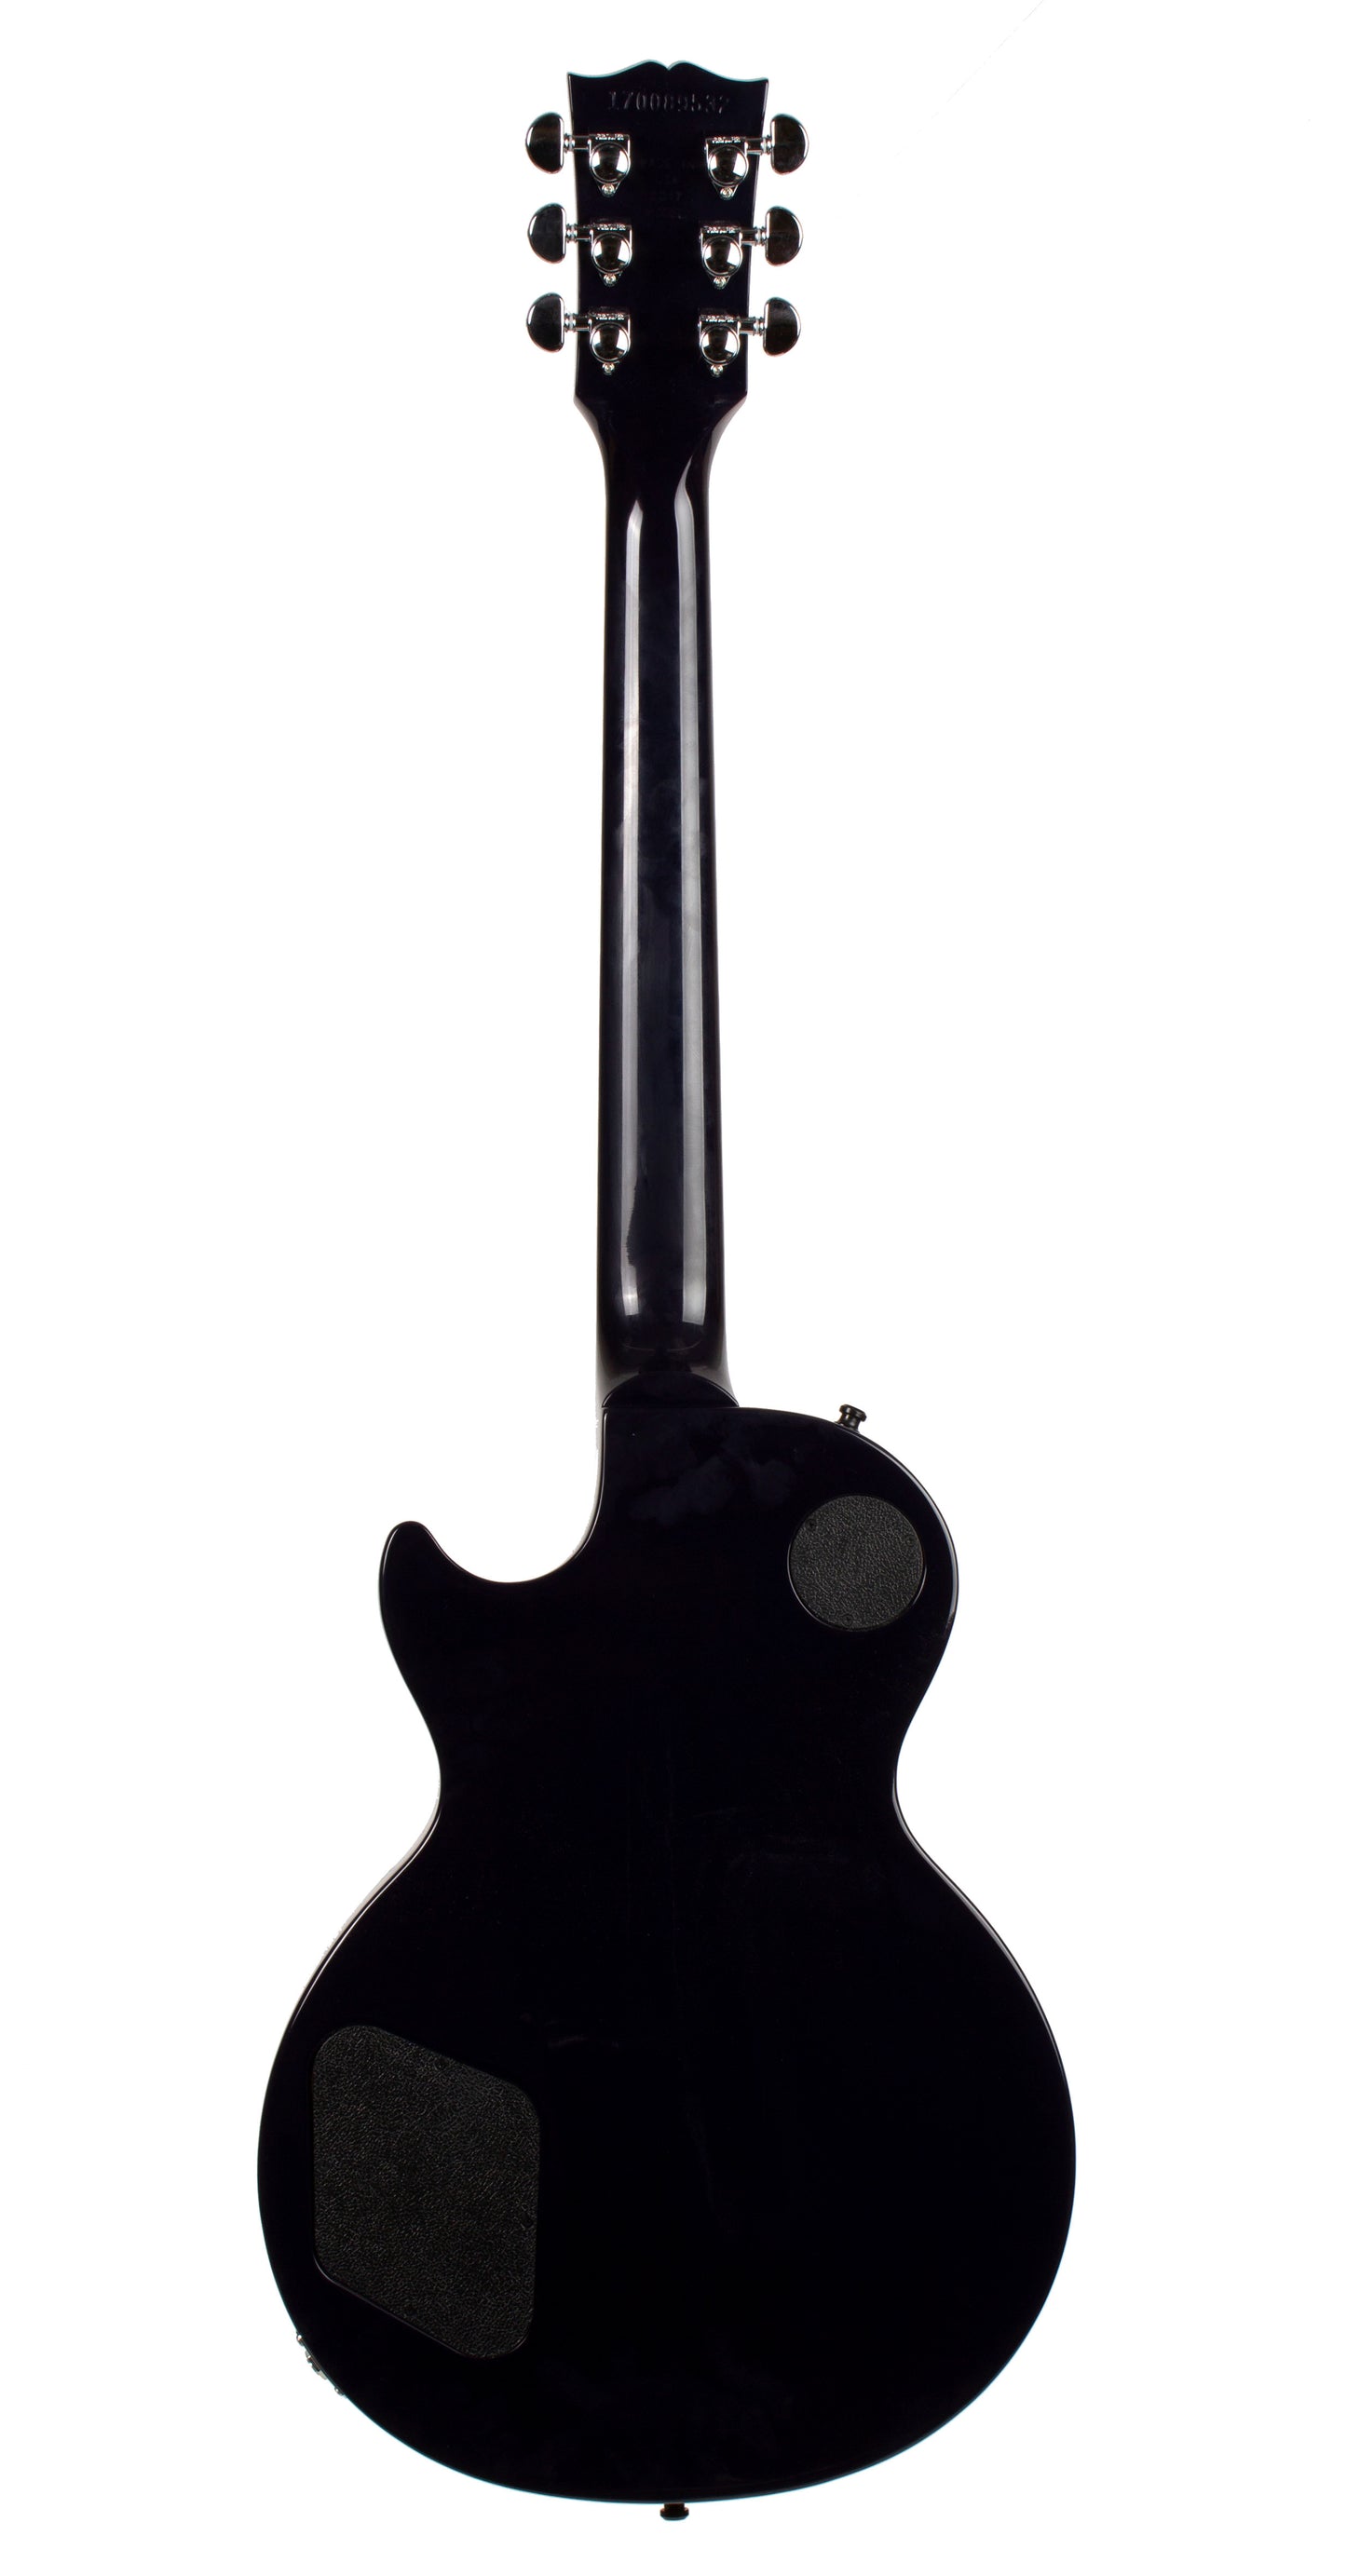 2017 Gibson Les Paul Standard in Blueberry Burst